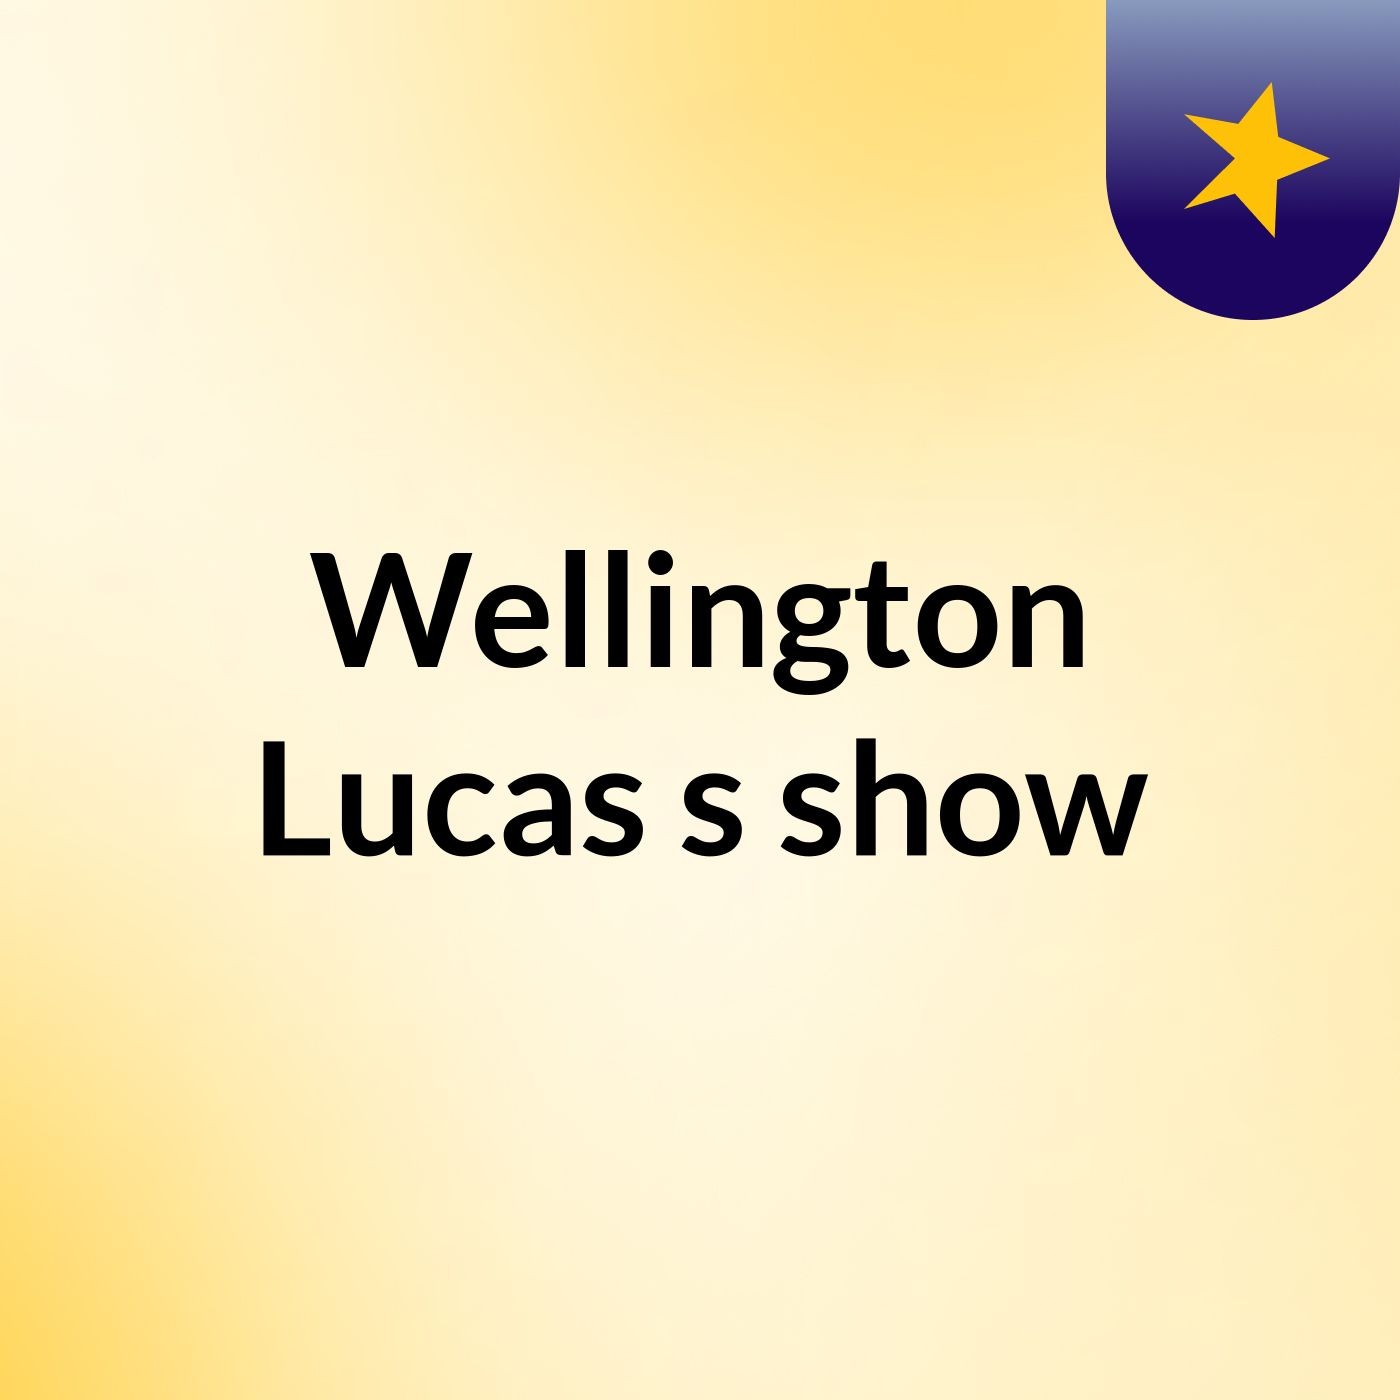 Wellington Lucas's show